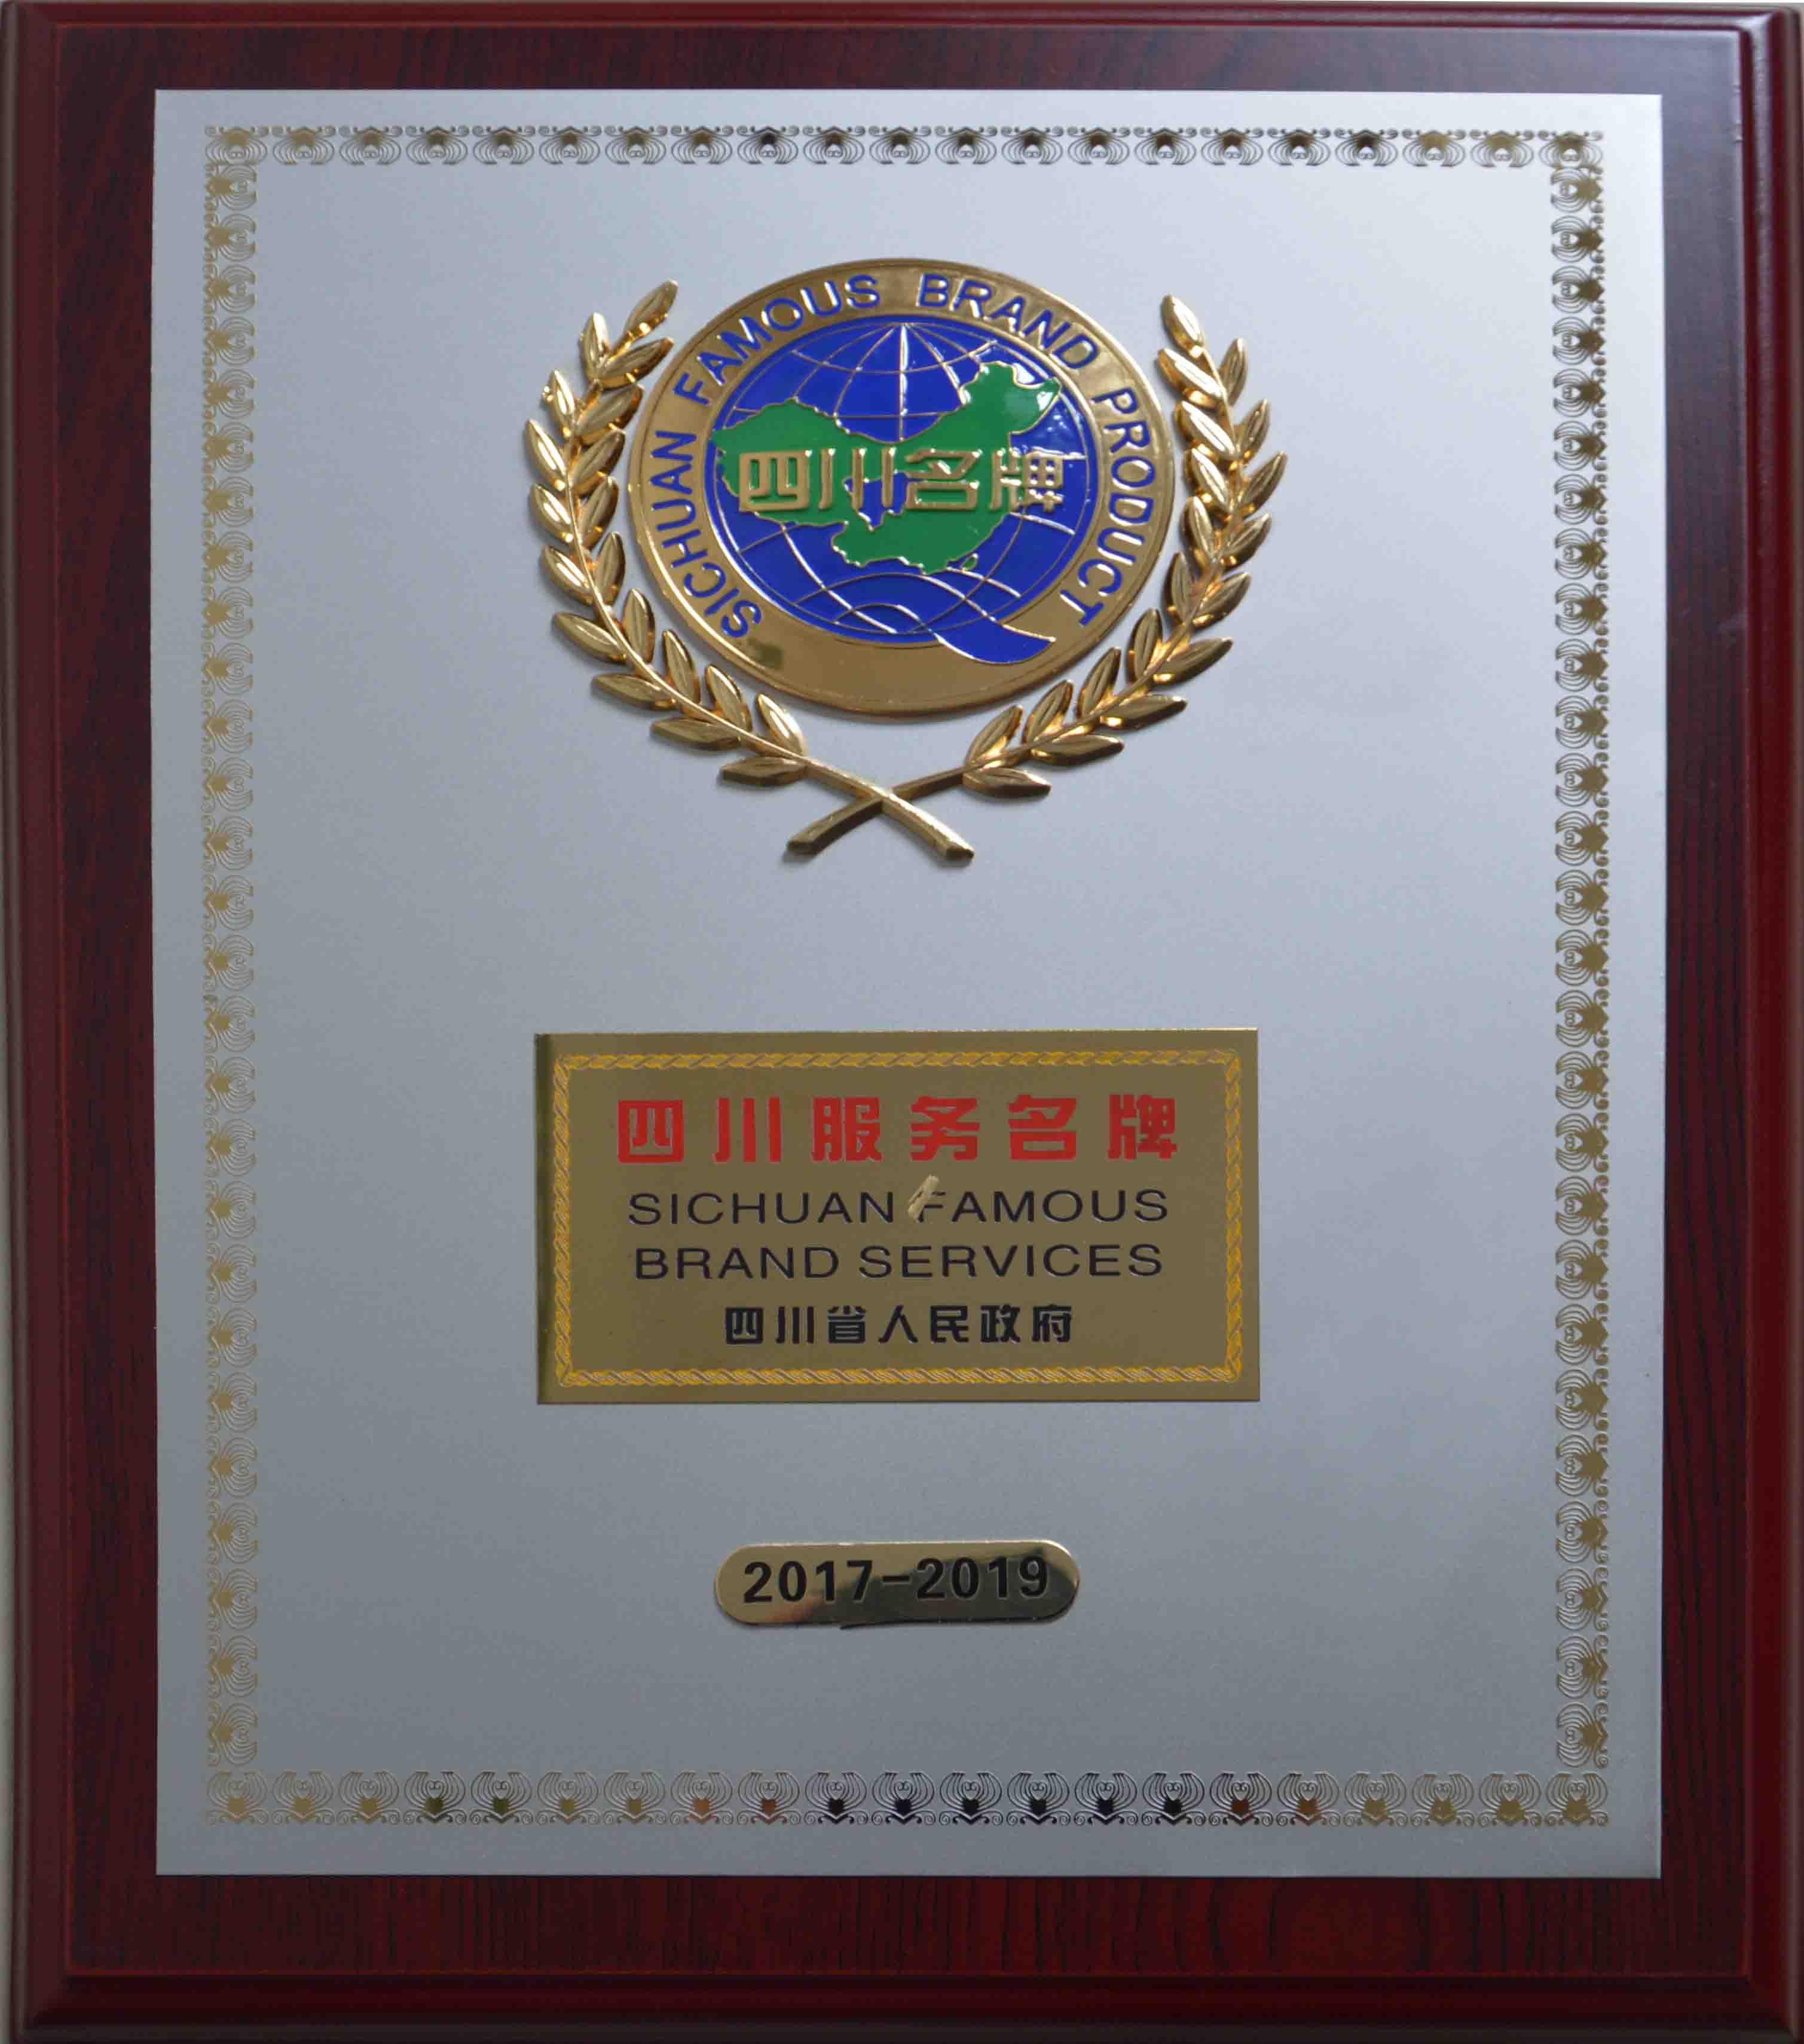 01佳美物业被四川省人民政府授予“四川服务名牌”称号。该奖项填补了资阳地区物业行业在该奖项的空白。1.jpg